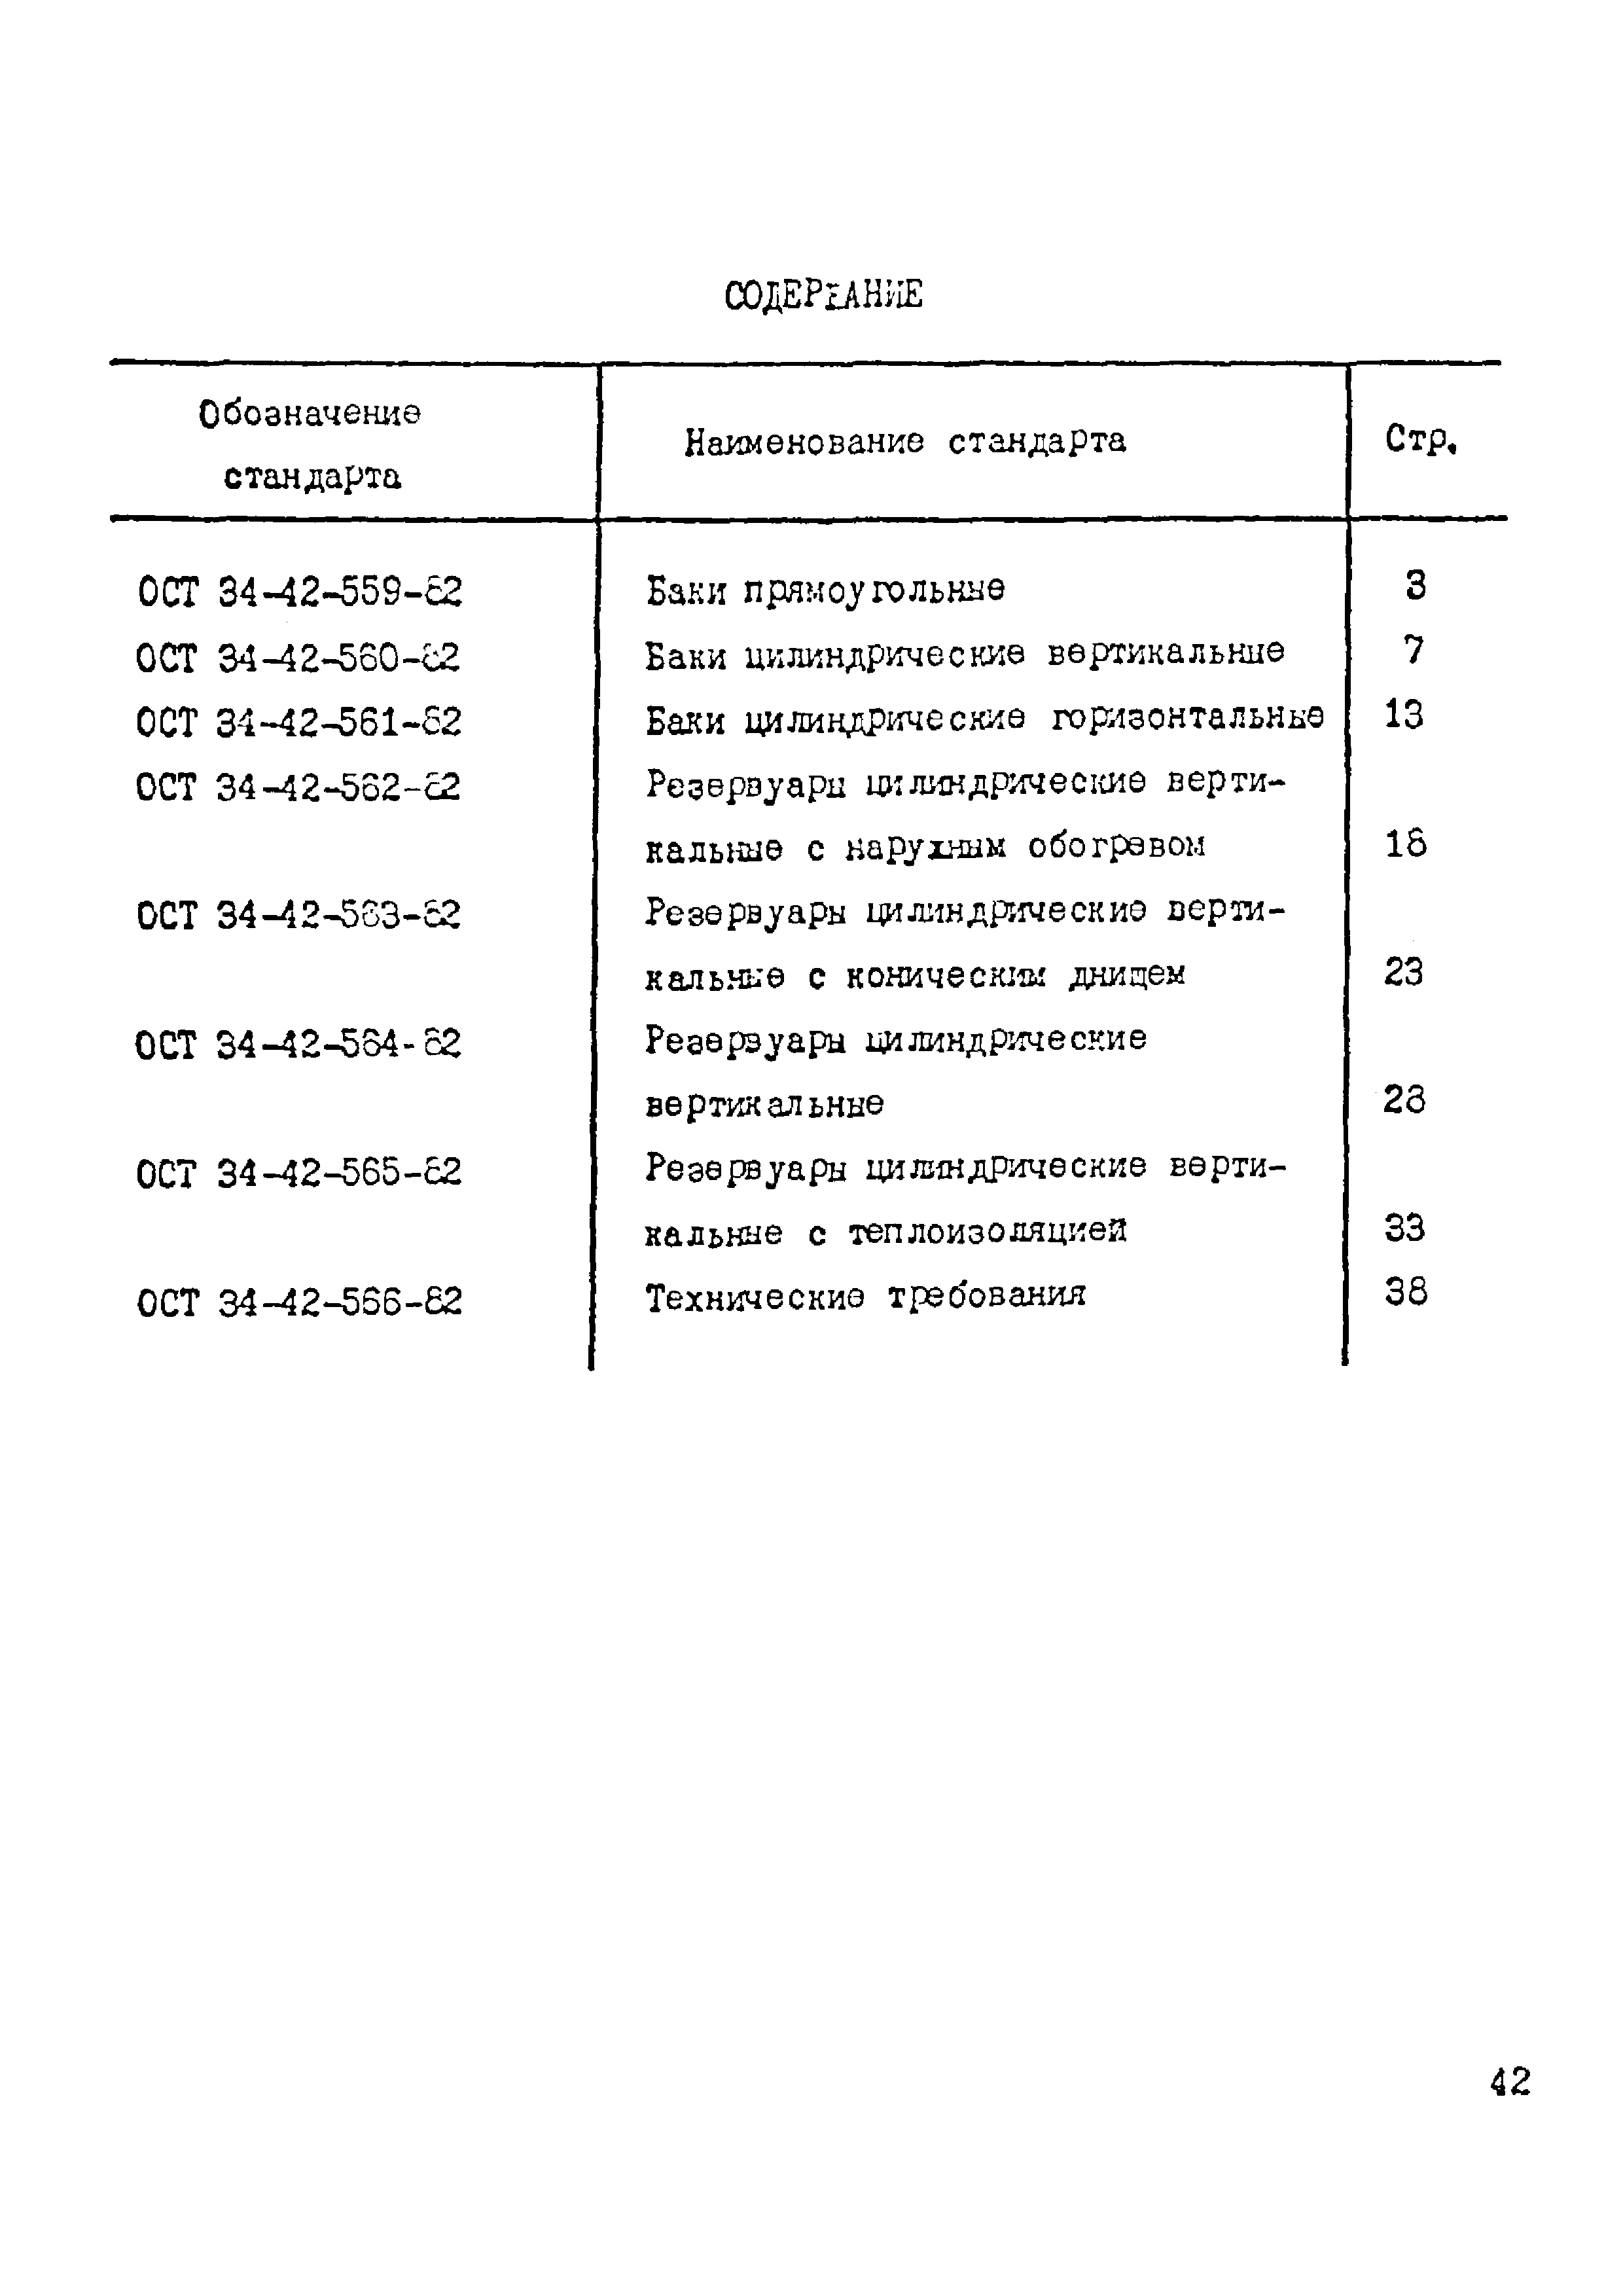 ОСТ 34-42-563-82